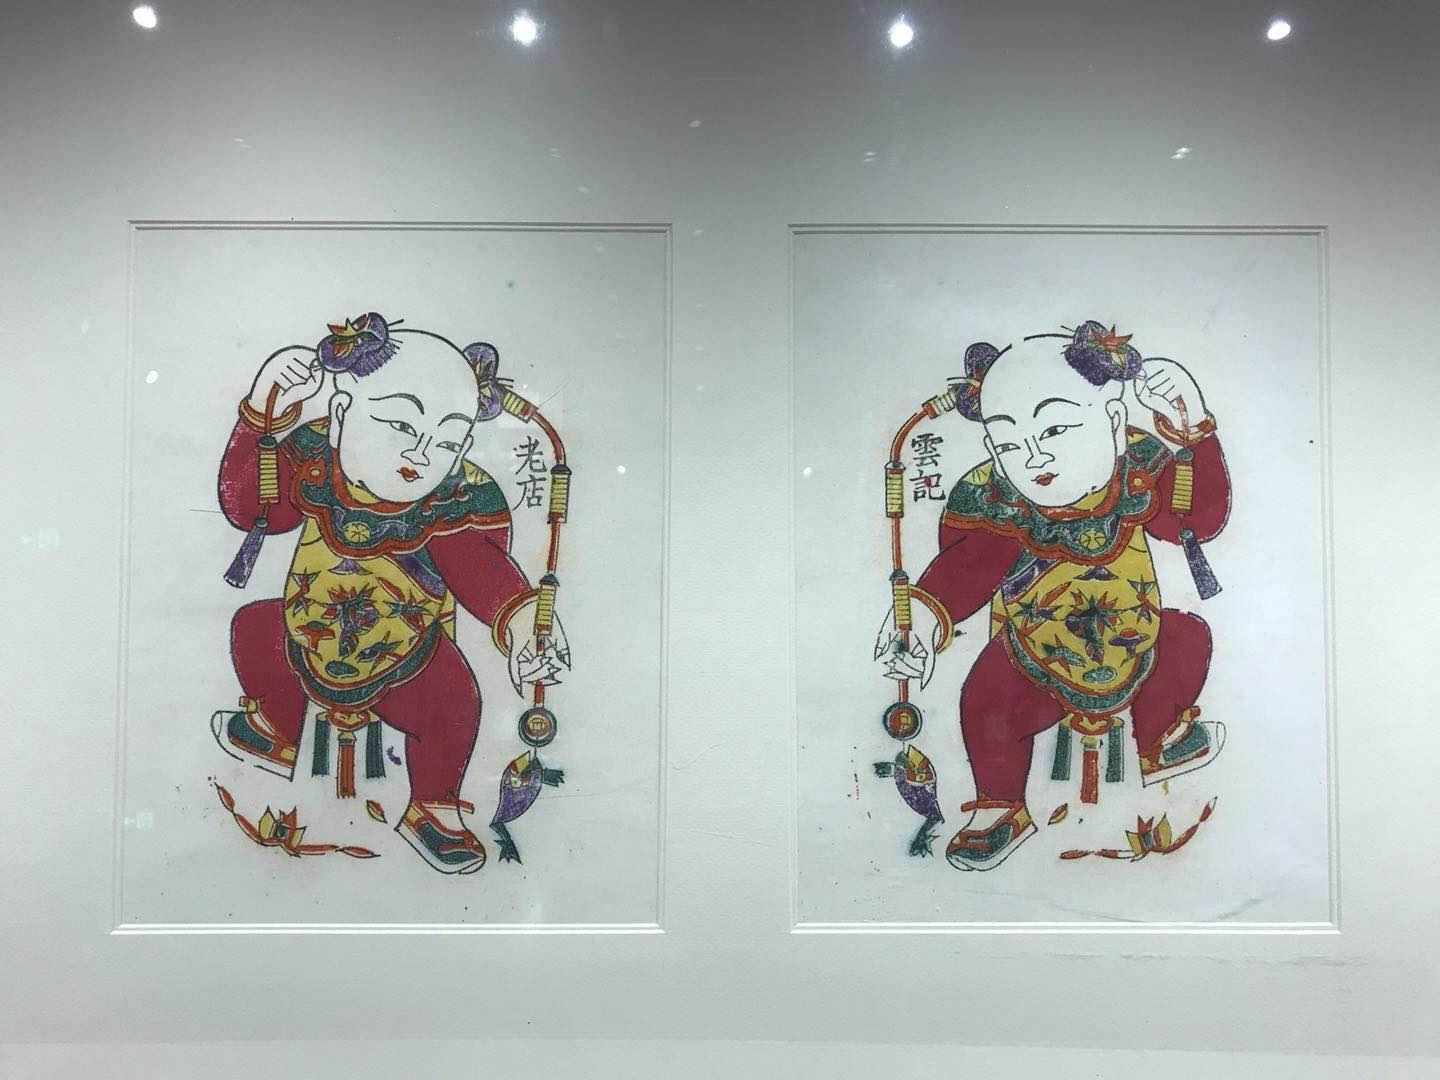 开封朱仙镇木版年画,传统艺术的结晶